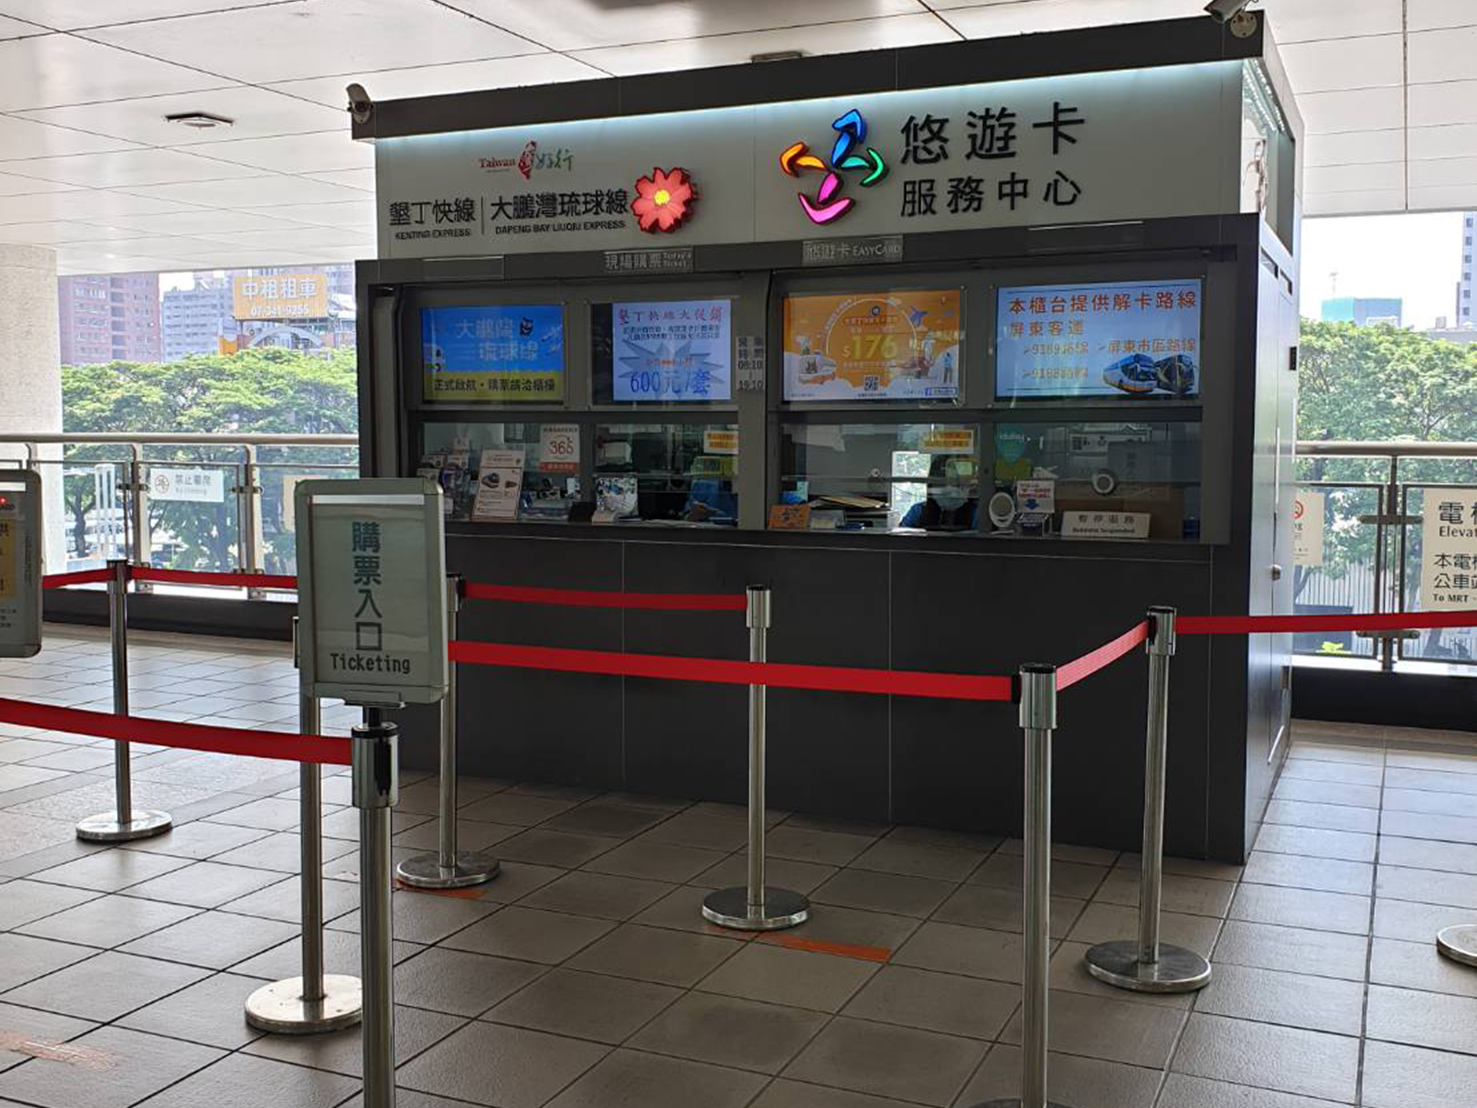 Bureau d'enregistrement des billets au 2e étage de la gare ferroviaire à grande vitesse de Zuoying